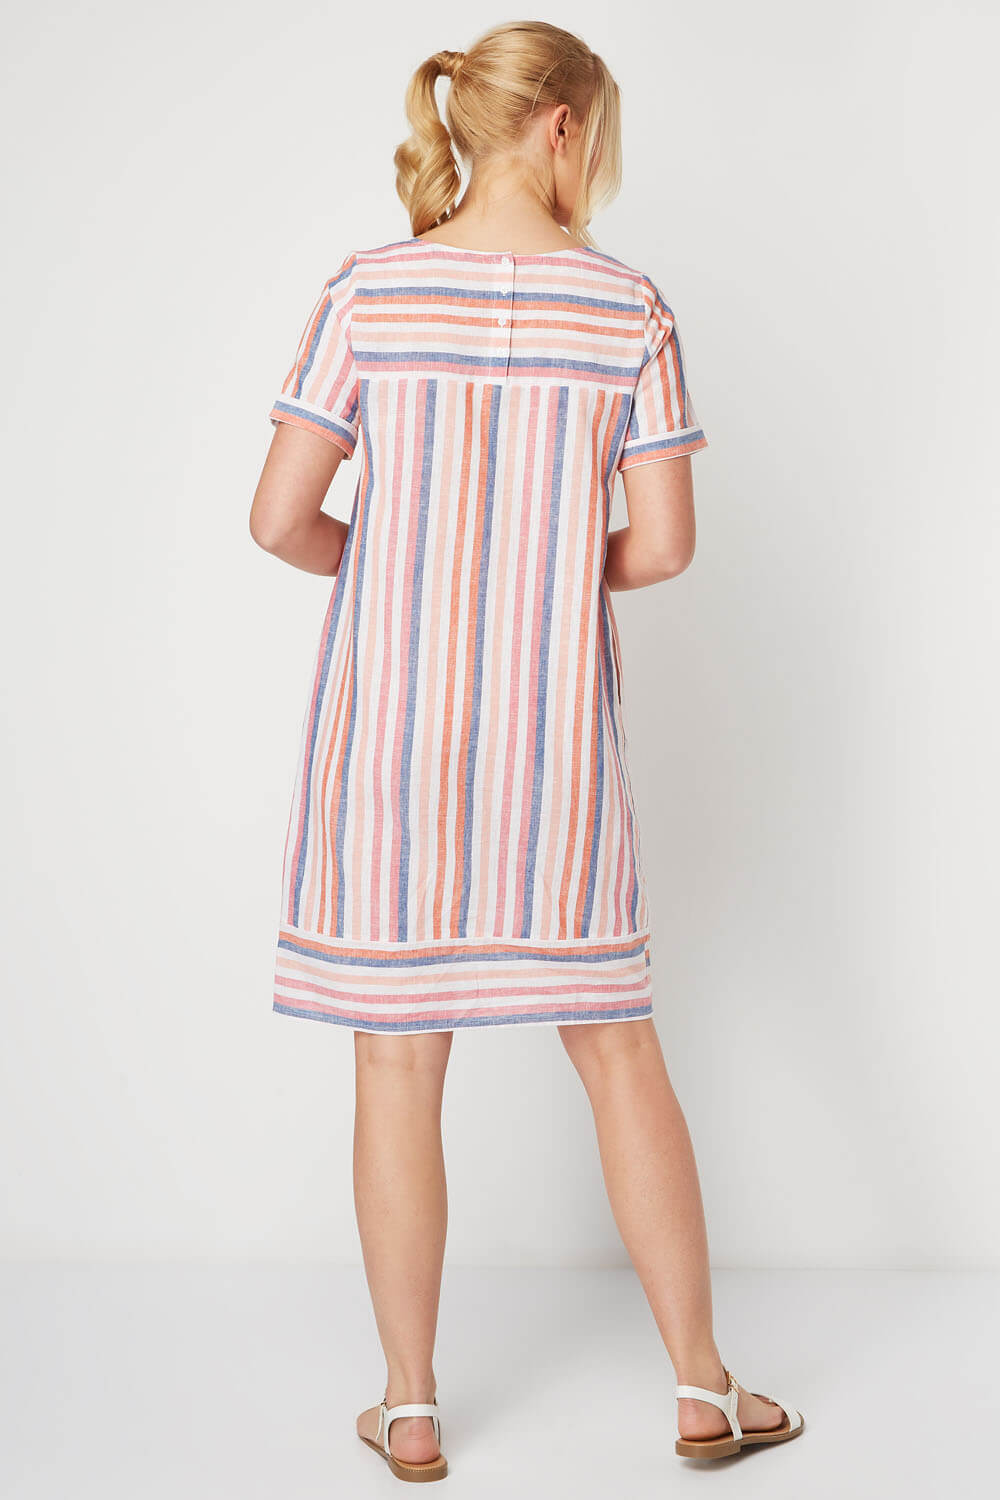 Multi Coloured Striped Linen Tunic, Image 3 of 5